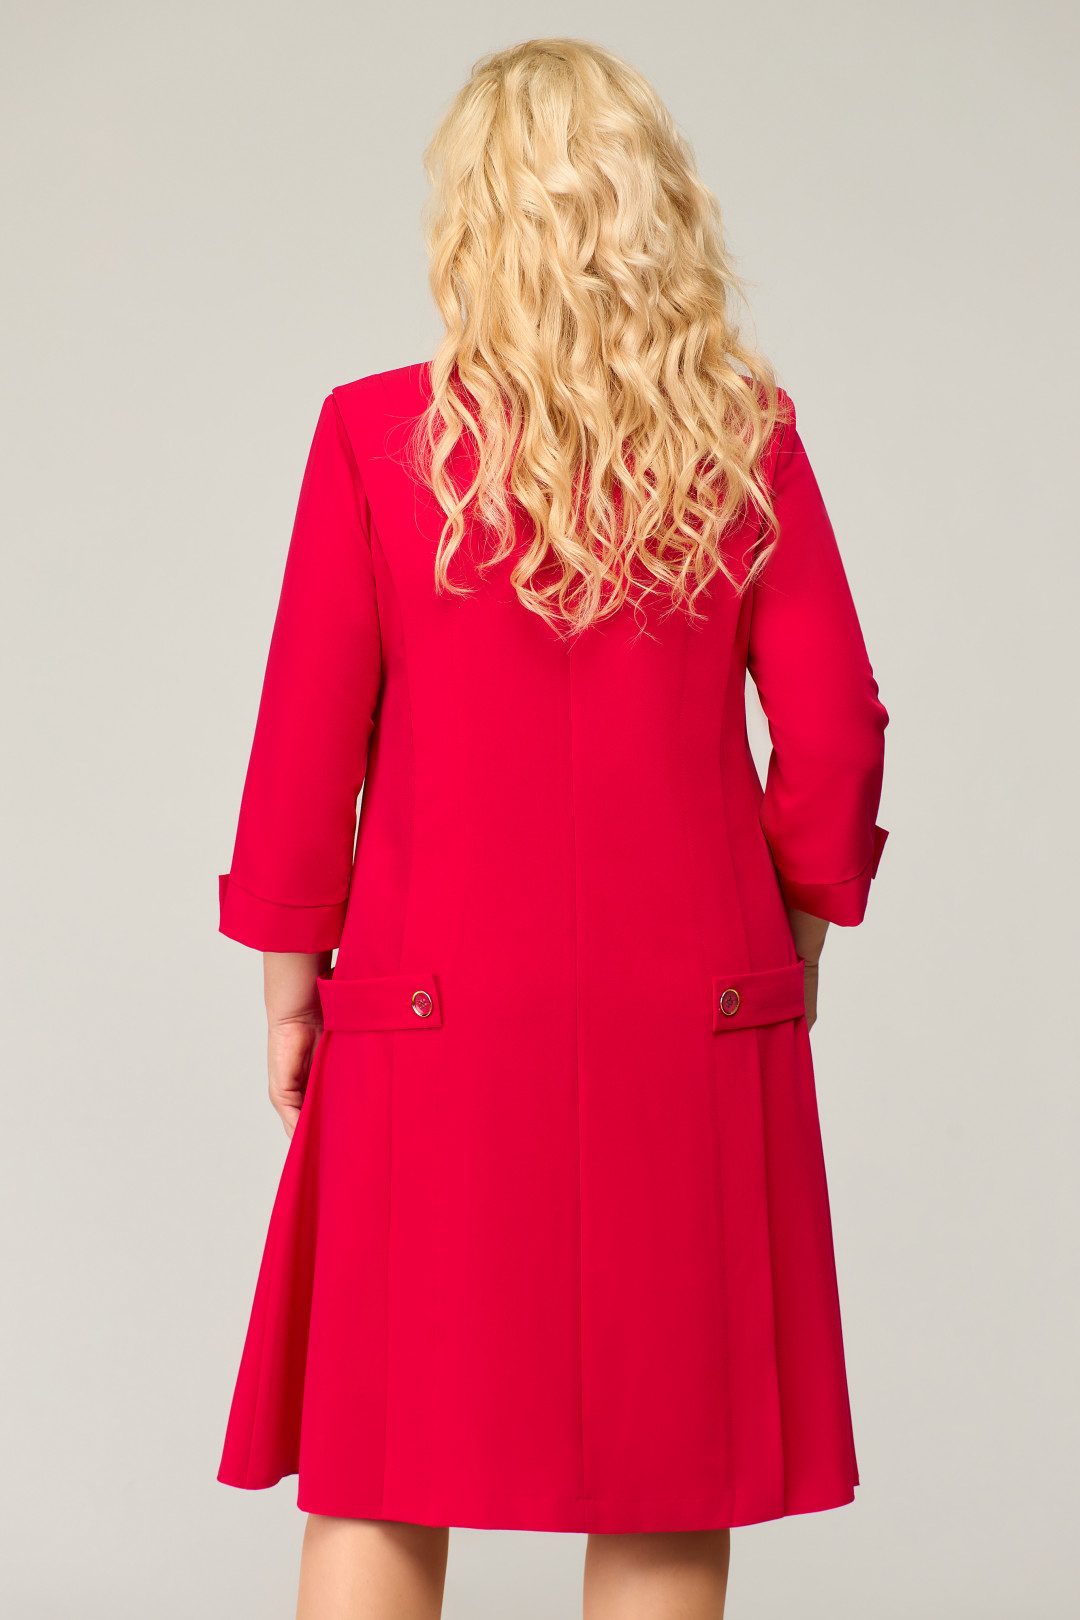 Платье Светлана-Стиль 1675 красный